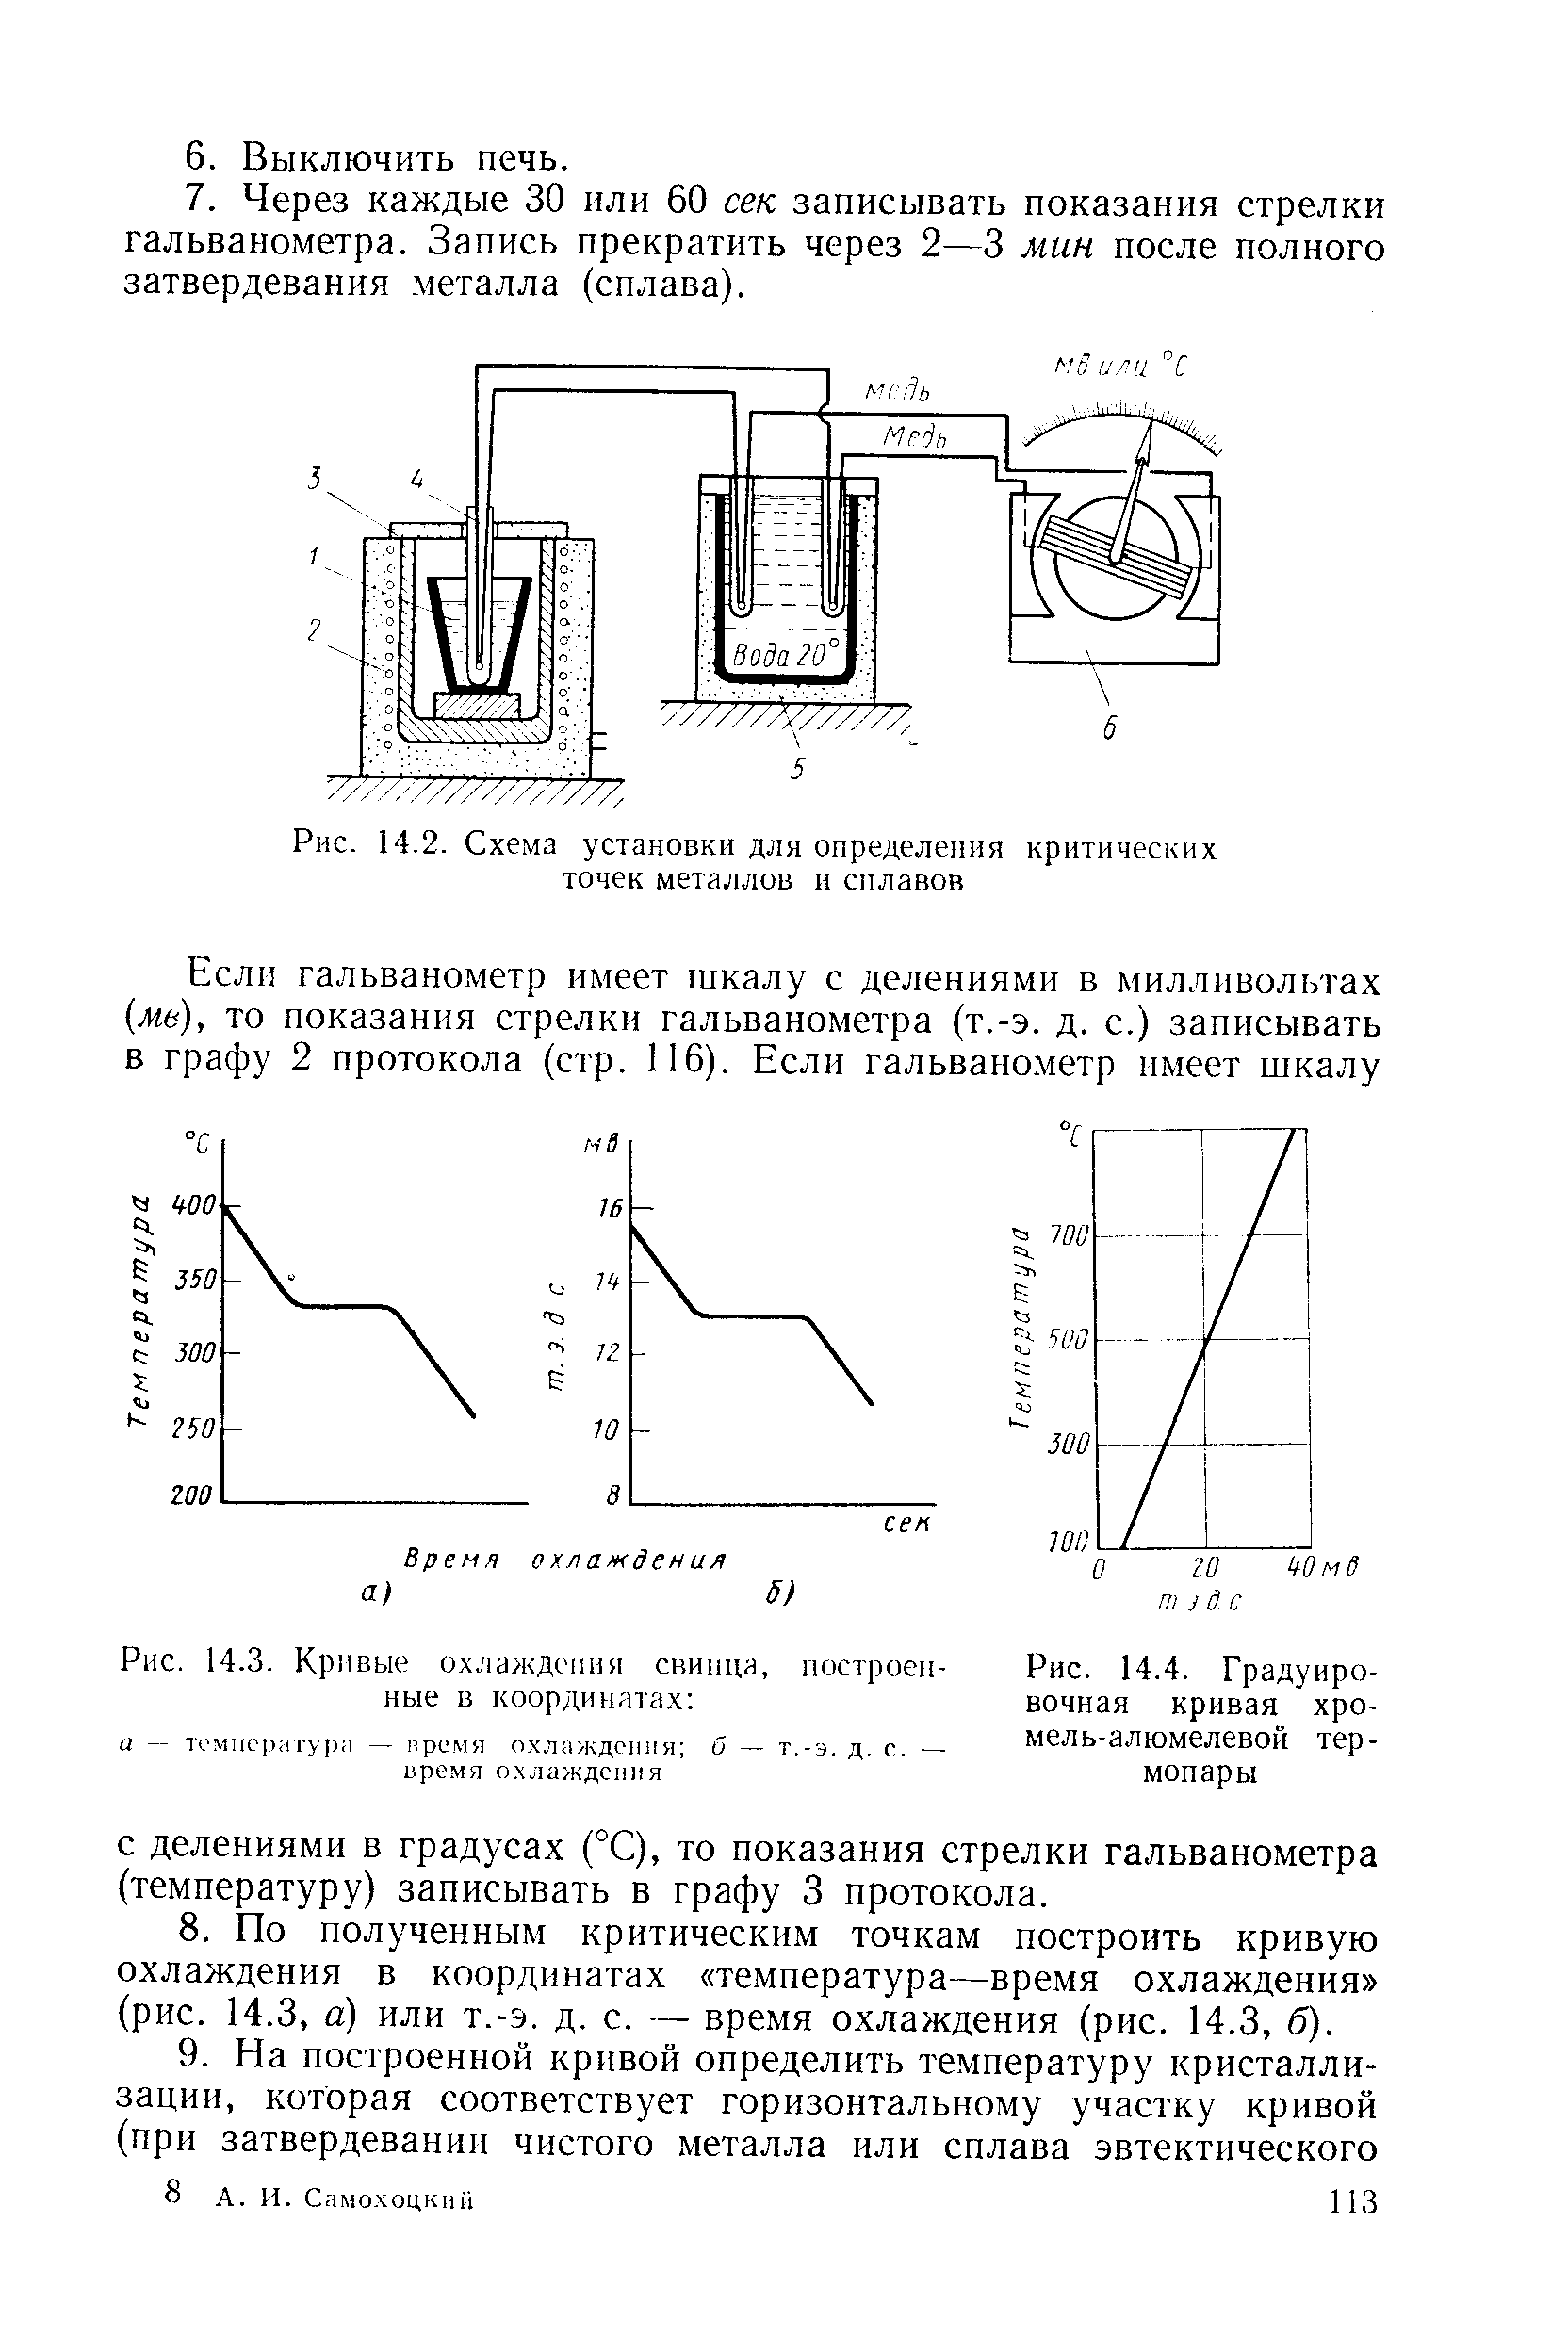 Рис. 14.2. Схема установки для определения критических точек металлов и сплавов
